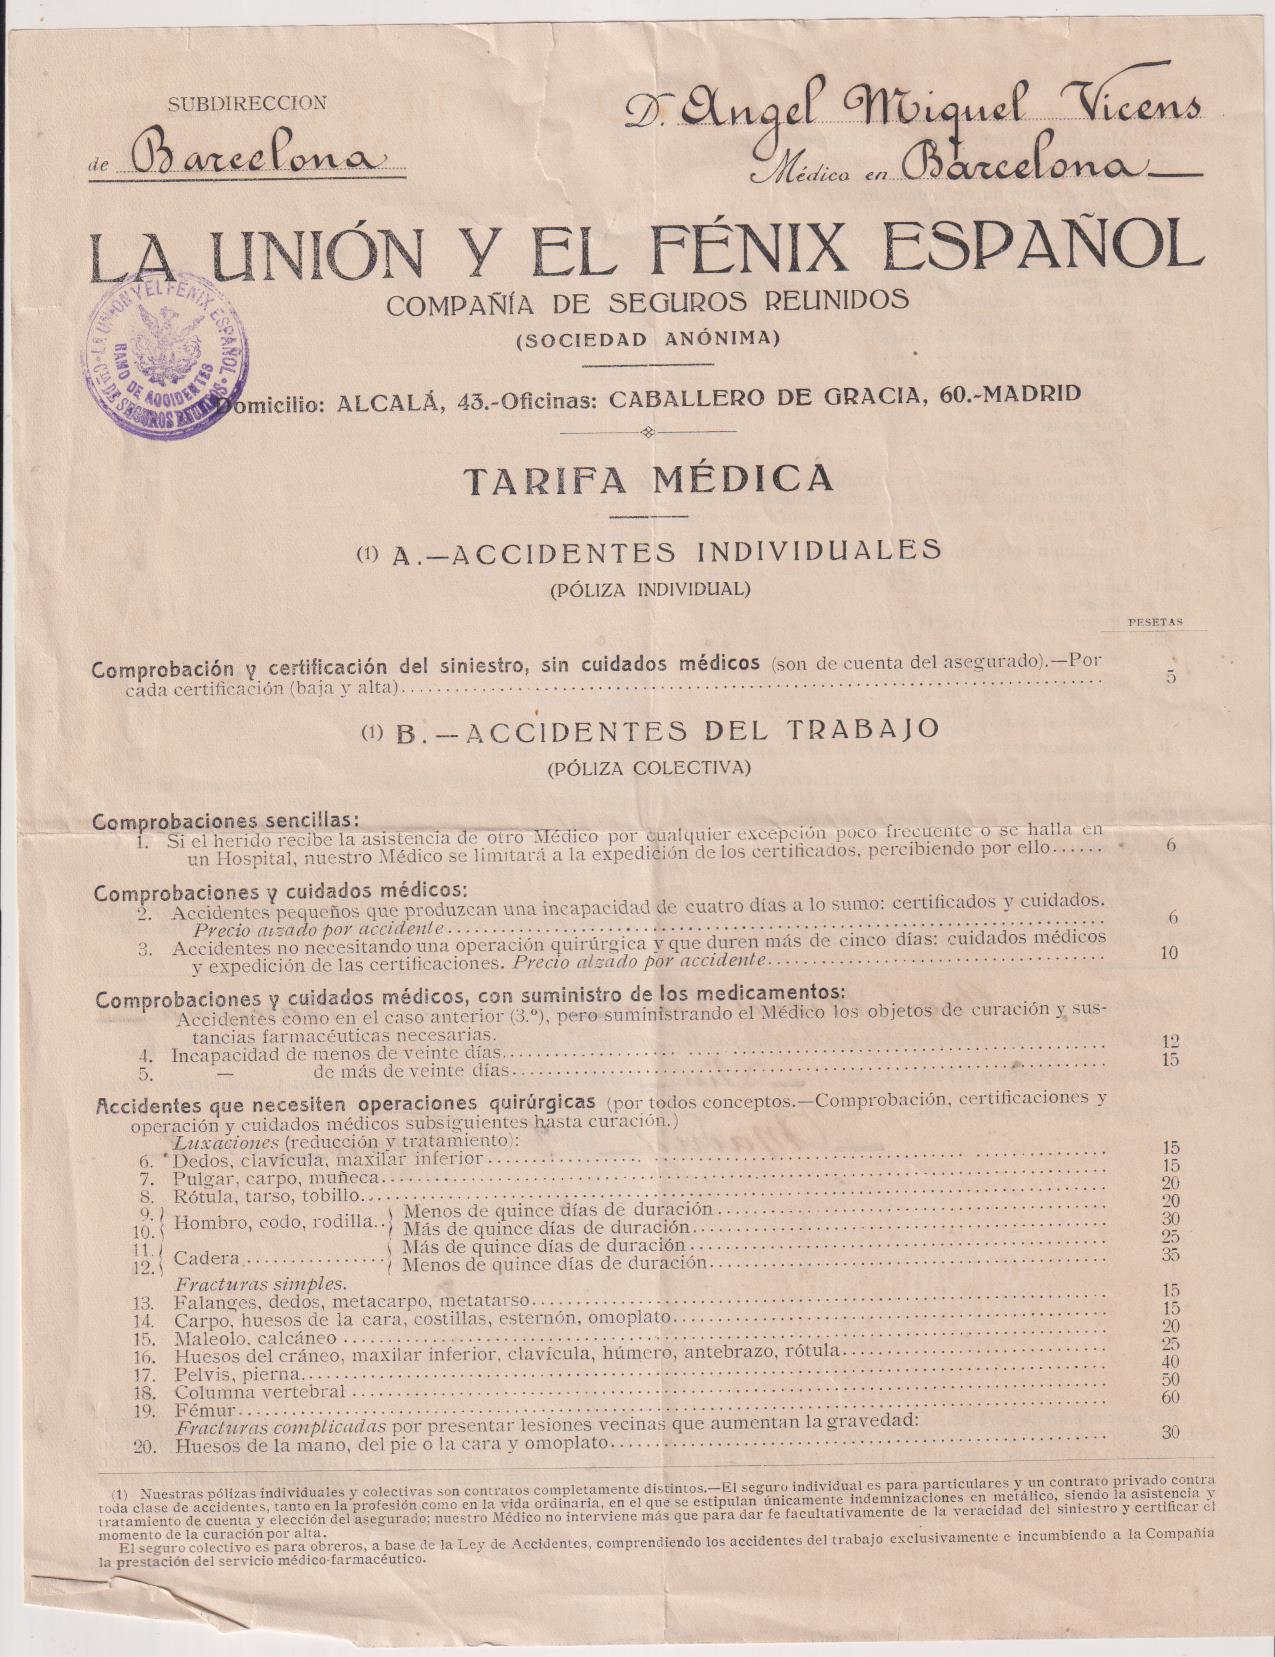 La Unión y El Fénix Español. Póliza de Tarifa Médica. Madrid m7 de Febrero 1918